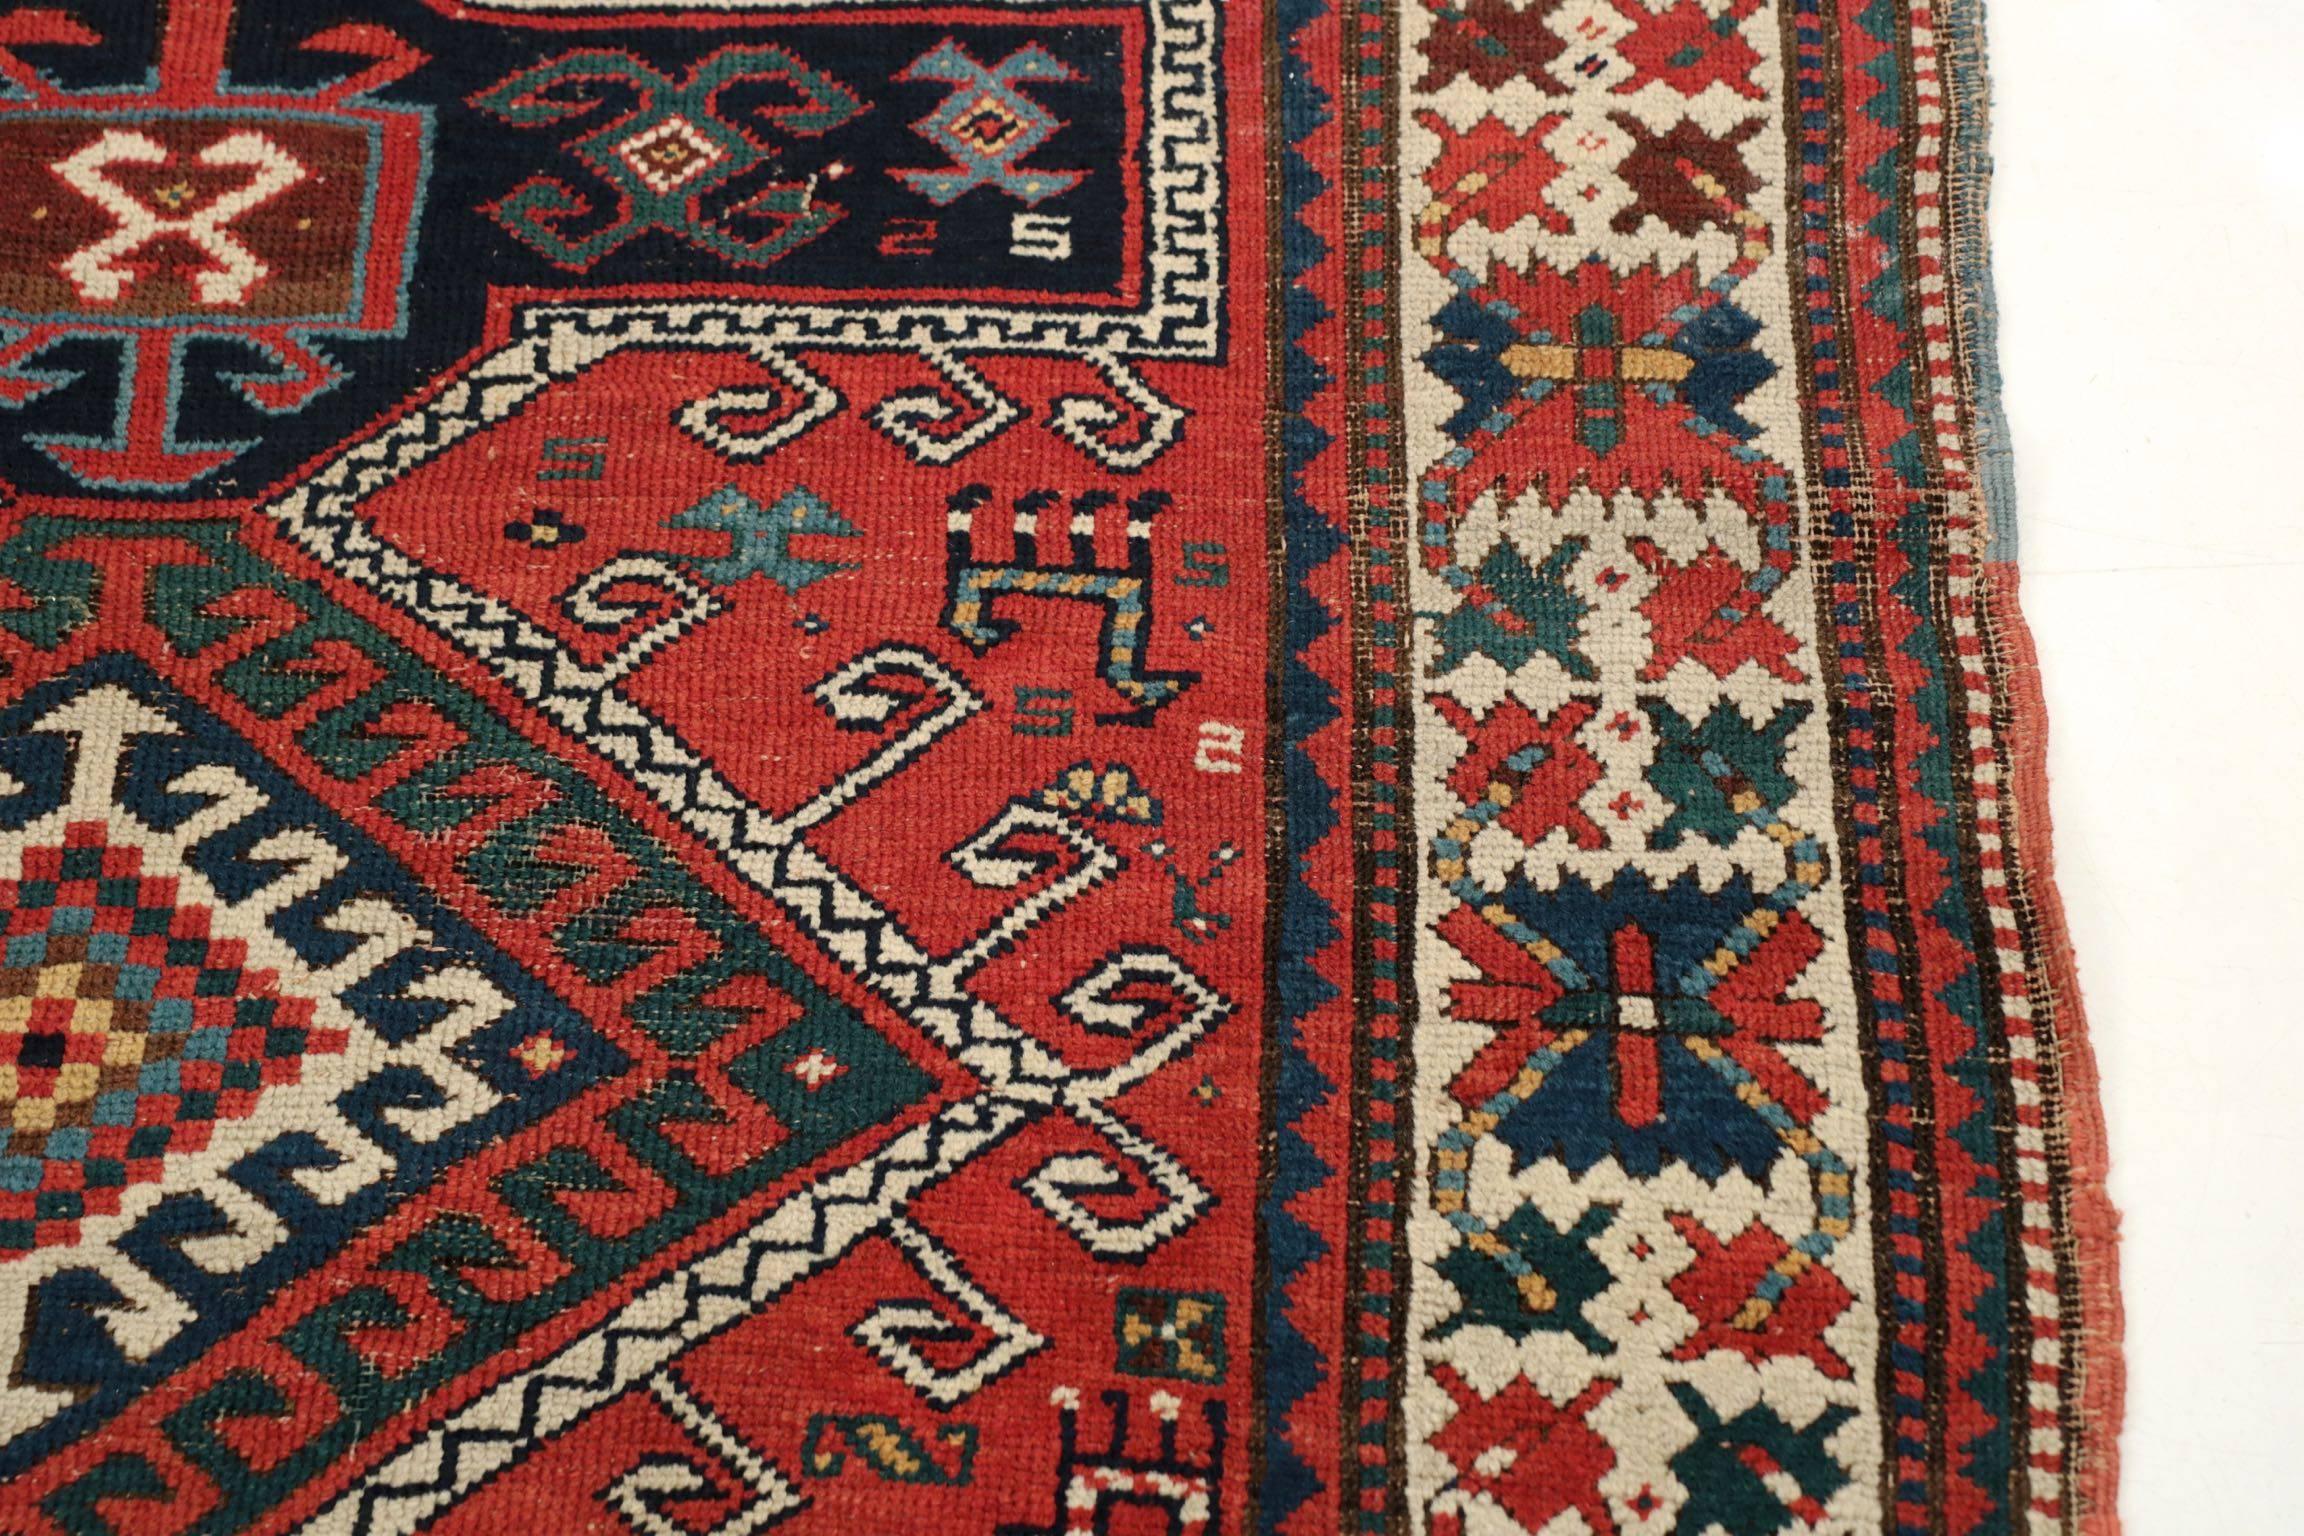 Hand-Woven Antique Caucasian Kazak Area Rug, circa 1900